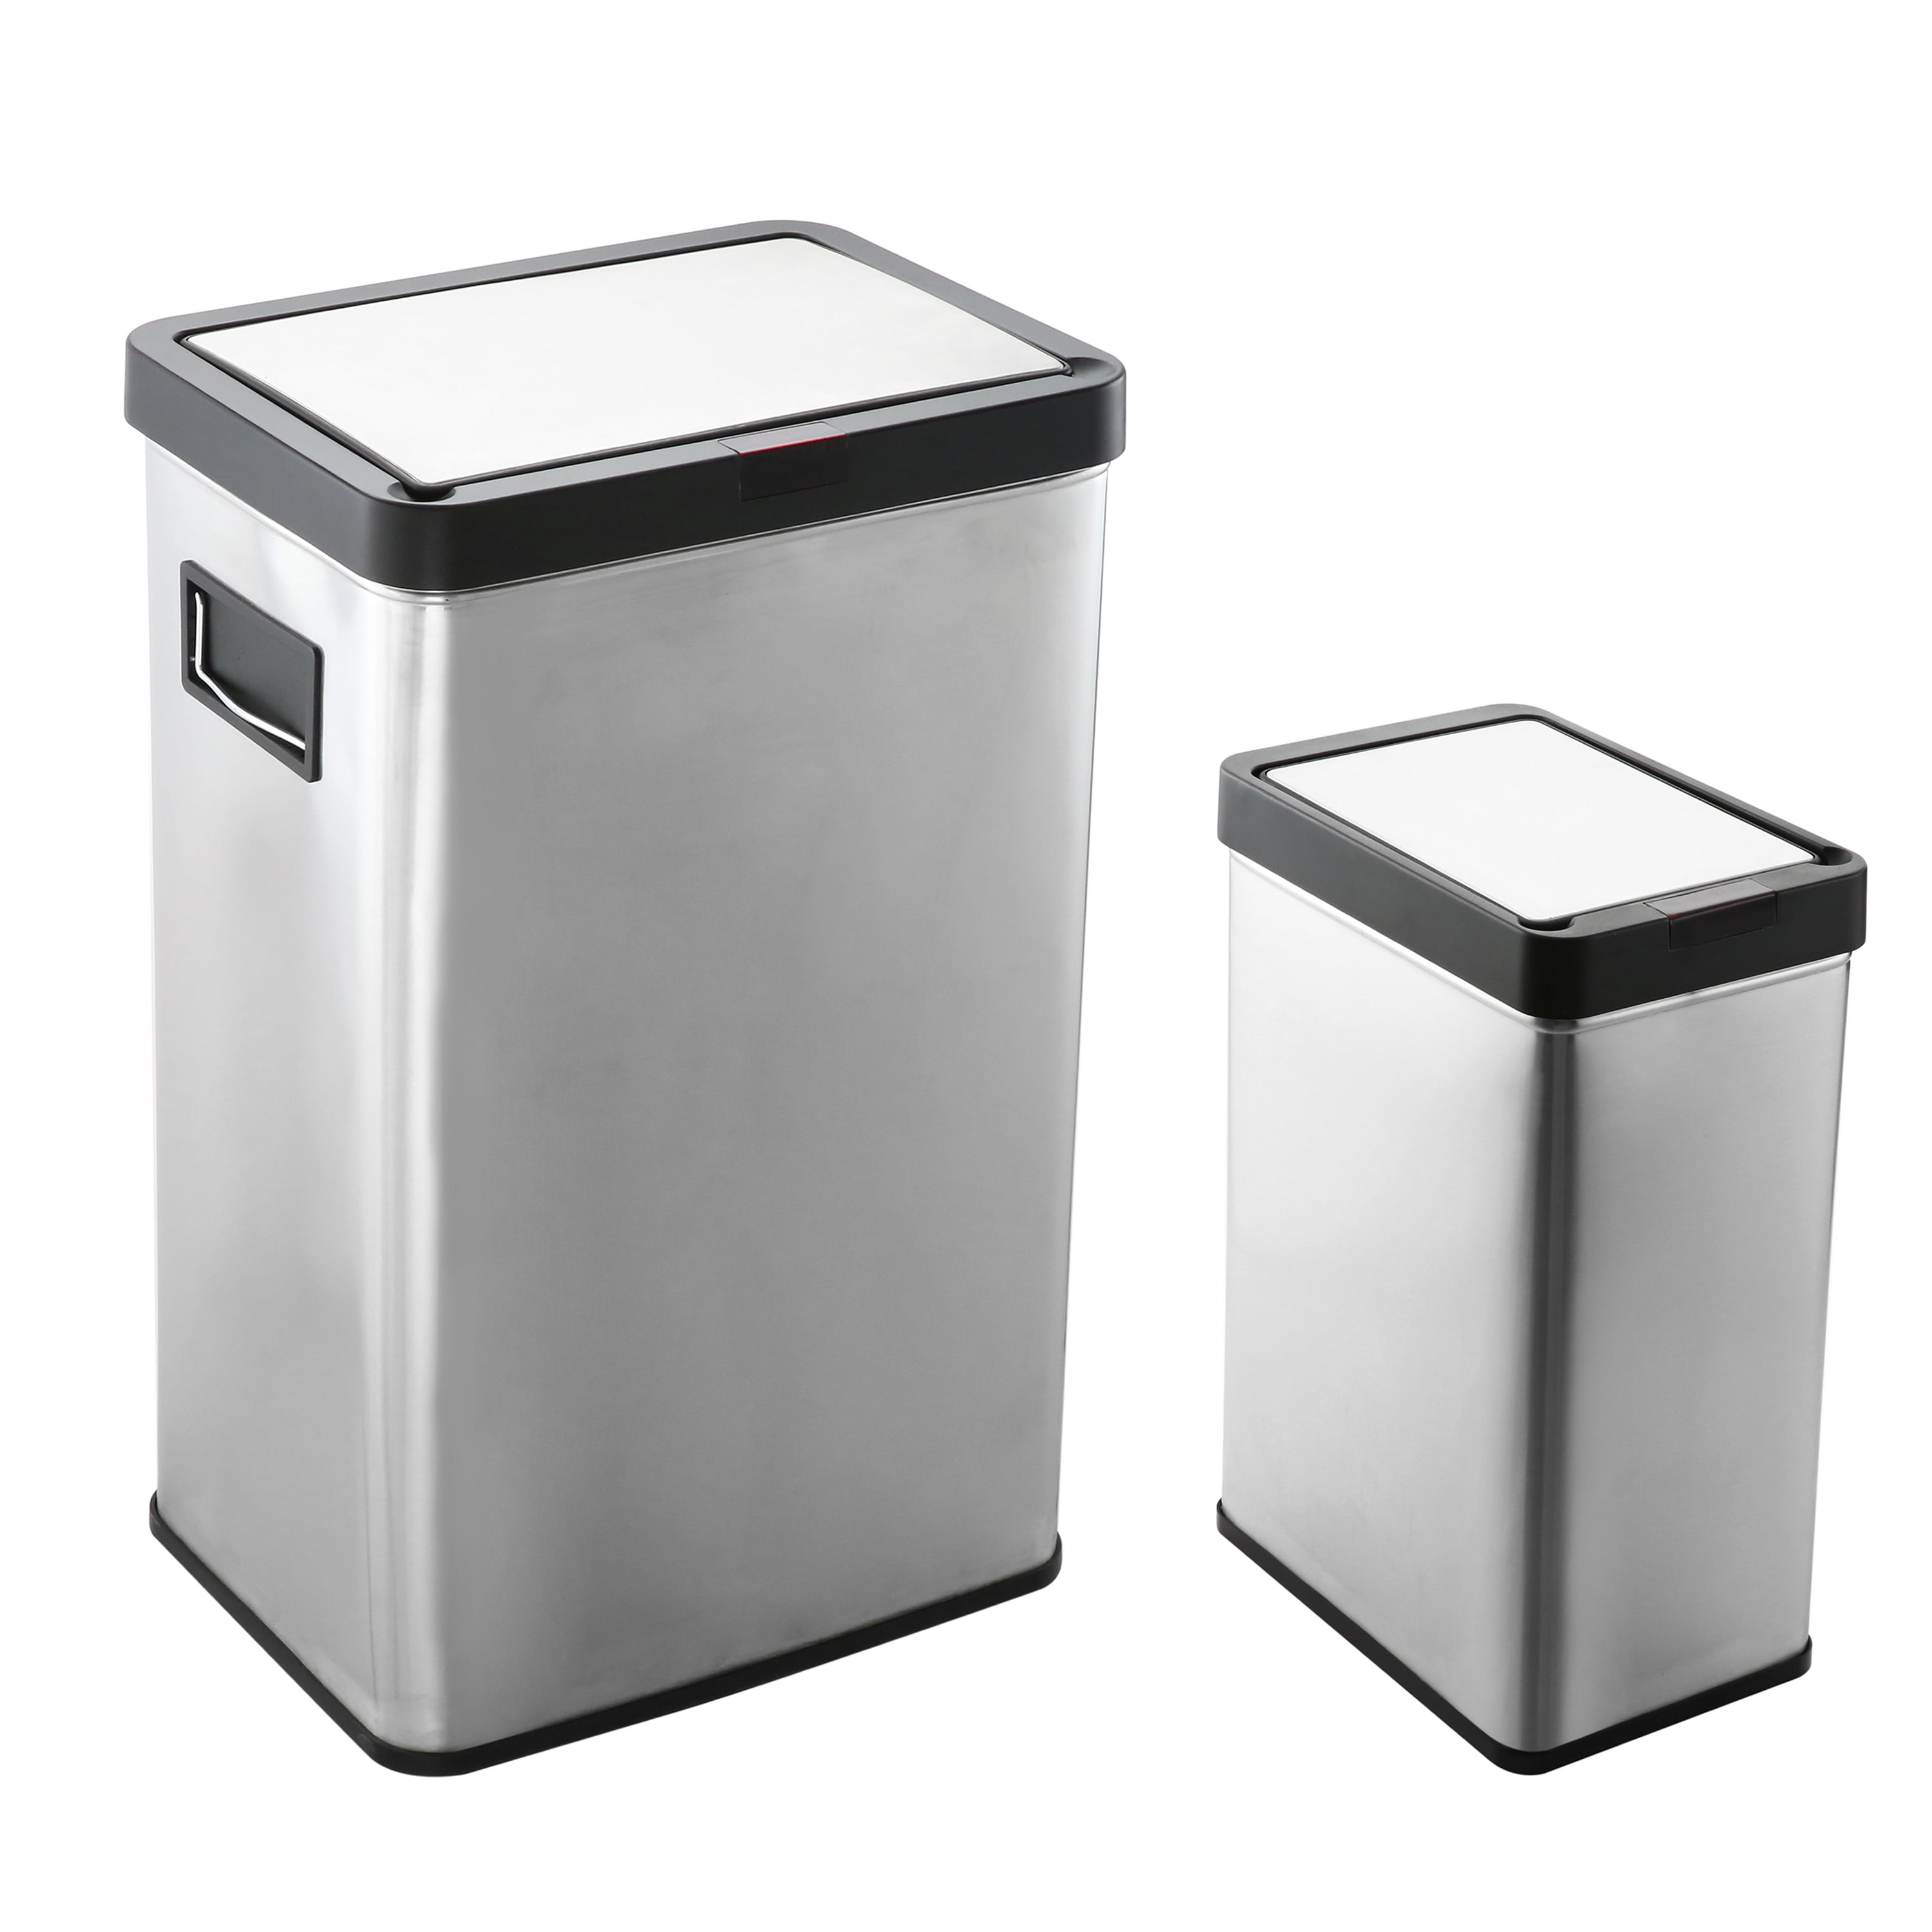 Sensor Trash Can (13 Gallon)- Square - The Clean Store